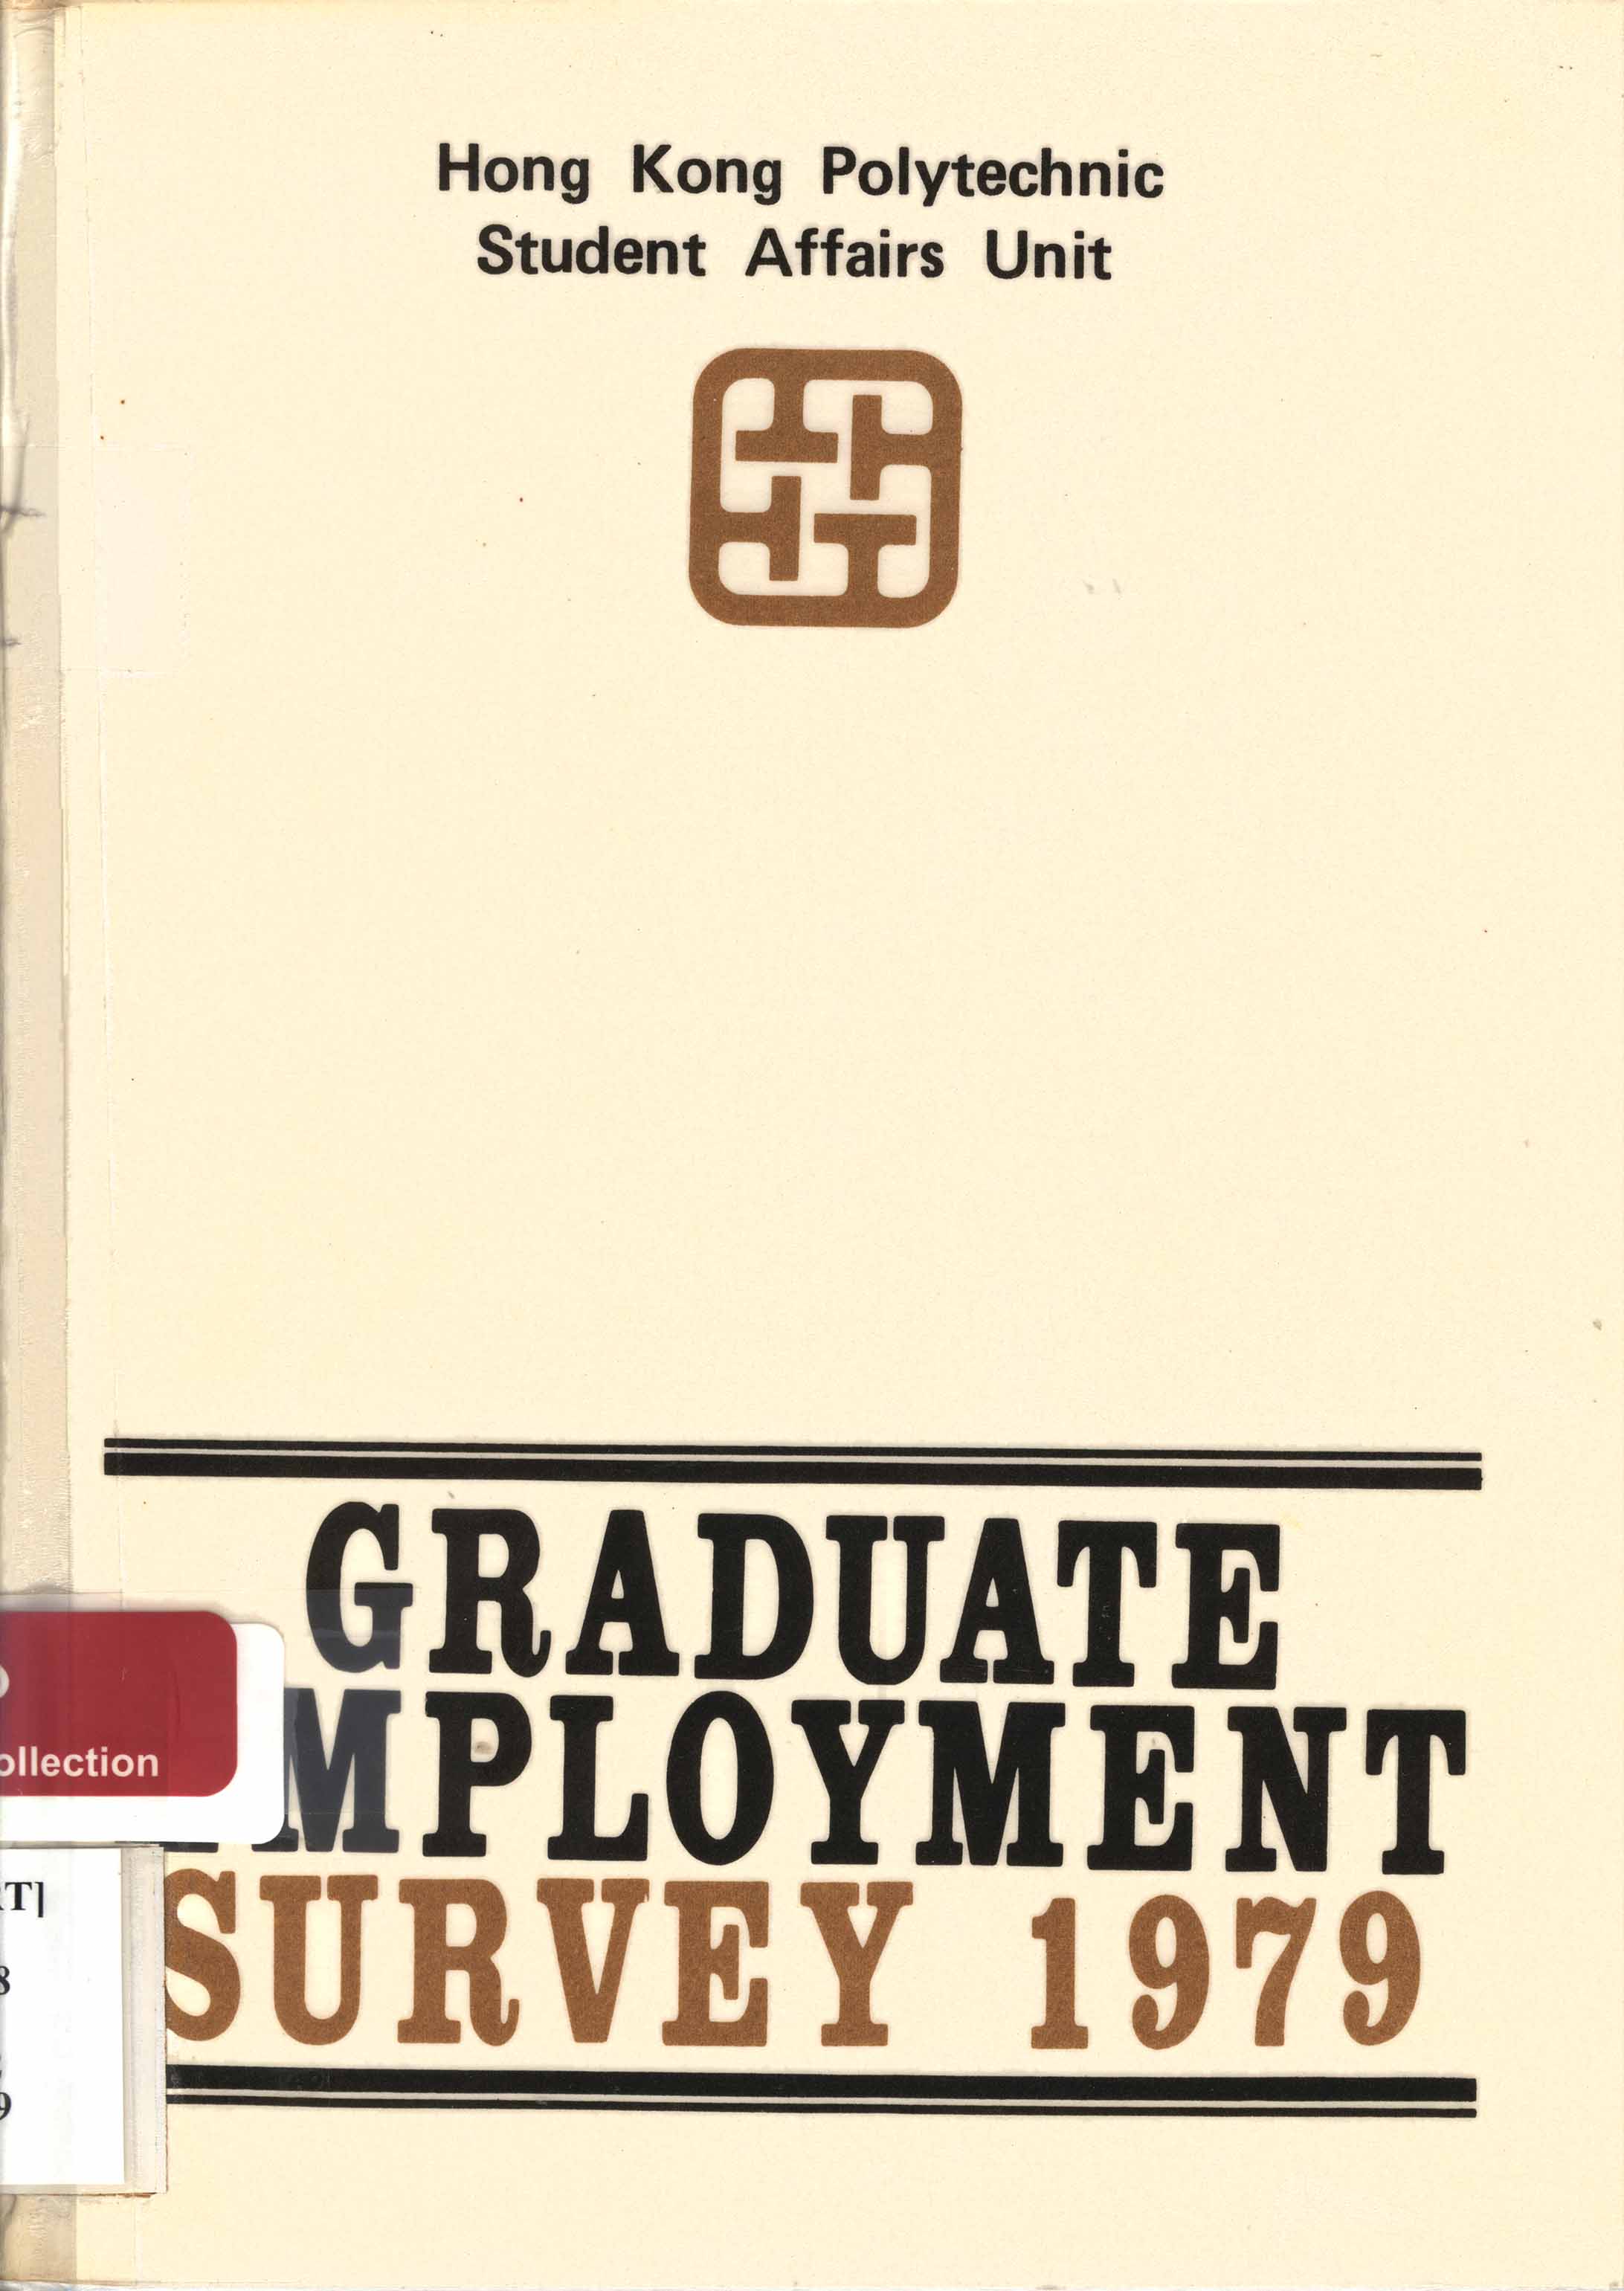 Graduate employment survey 1979